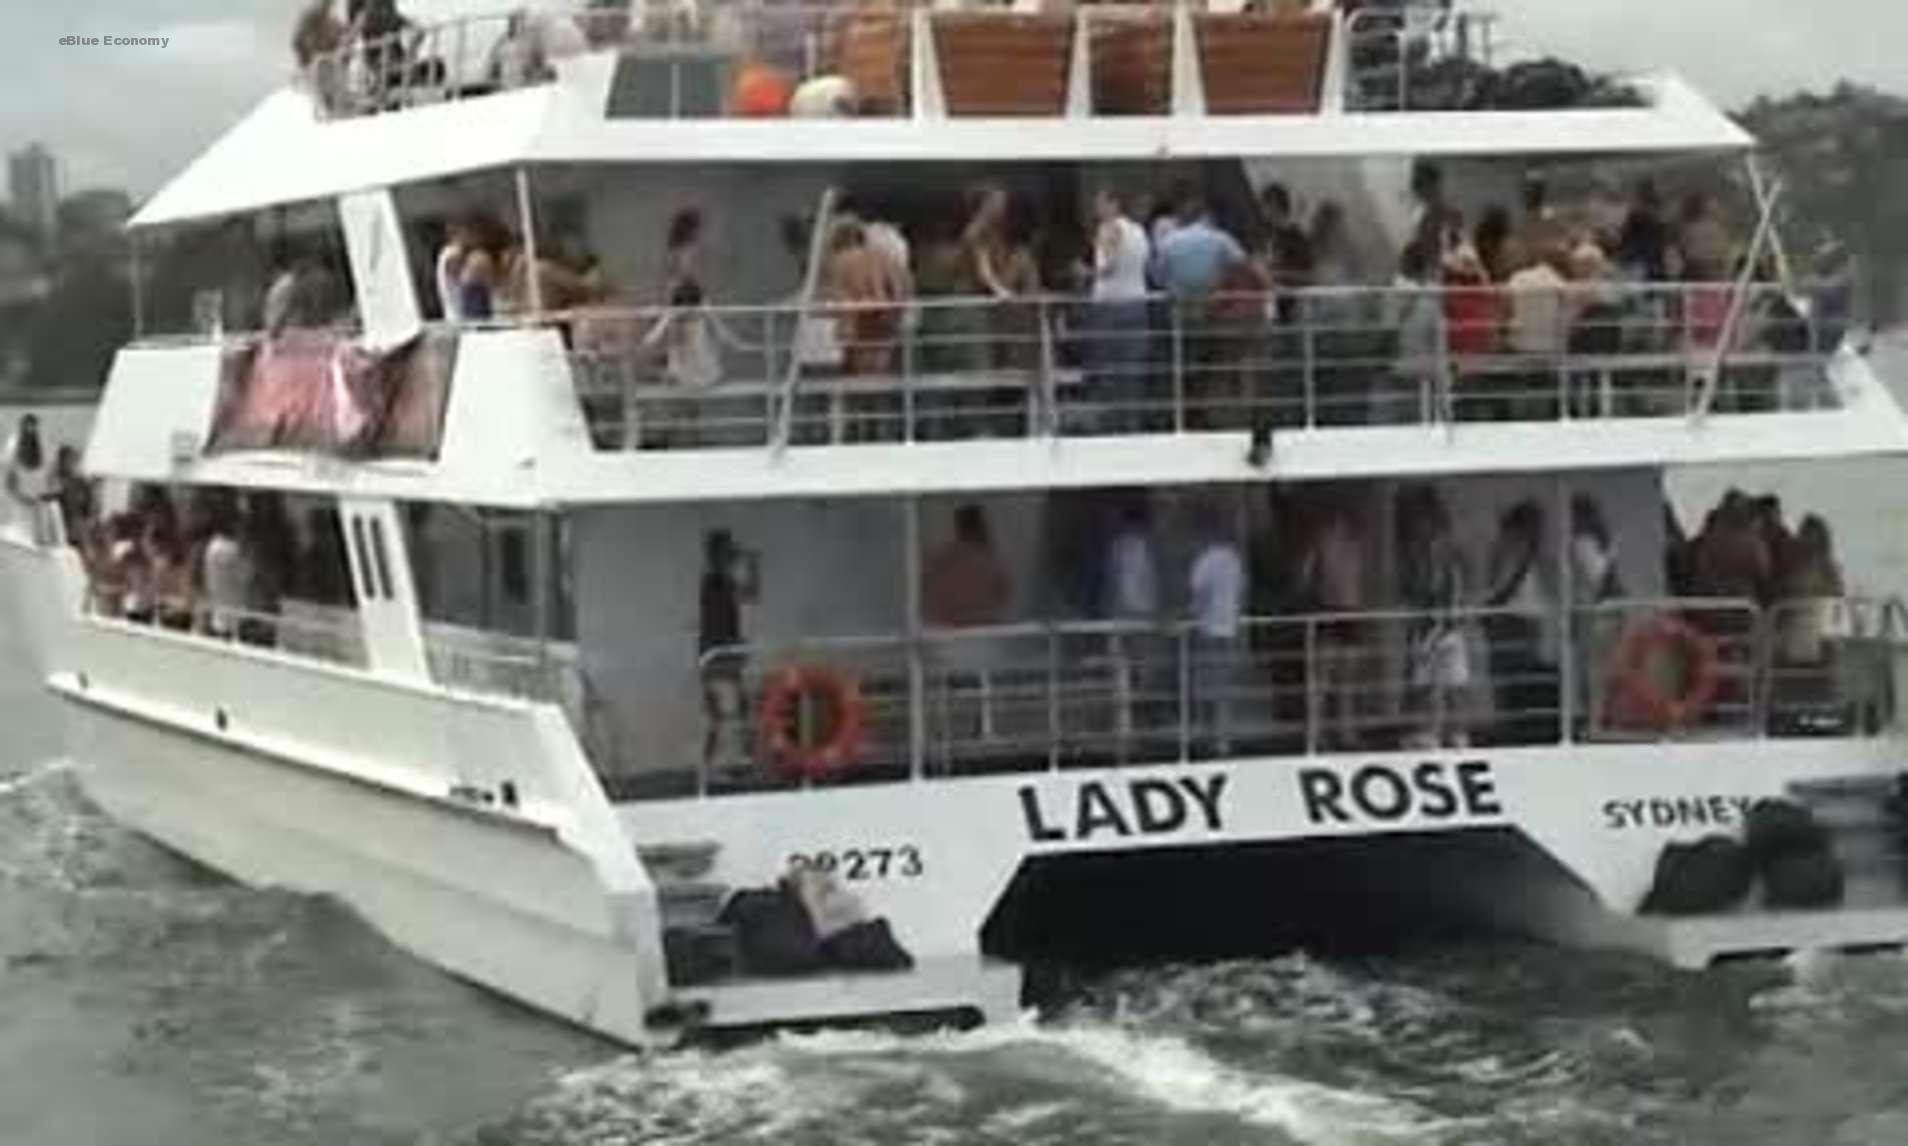 eBlue_economy_Lady_rose_cruise